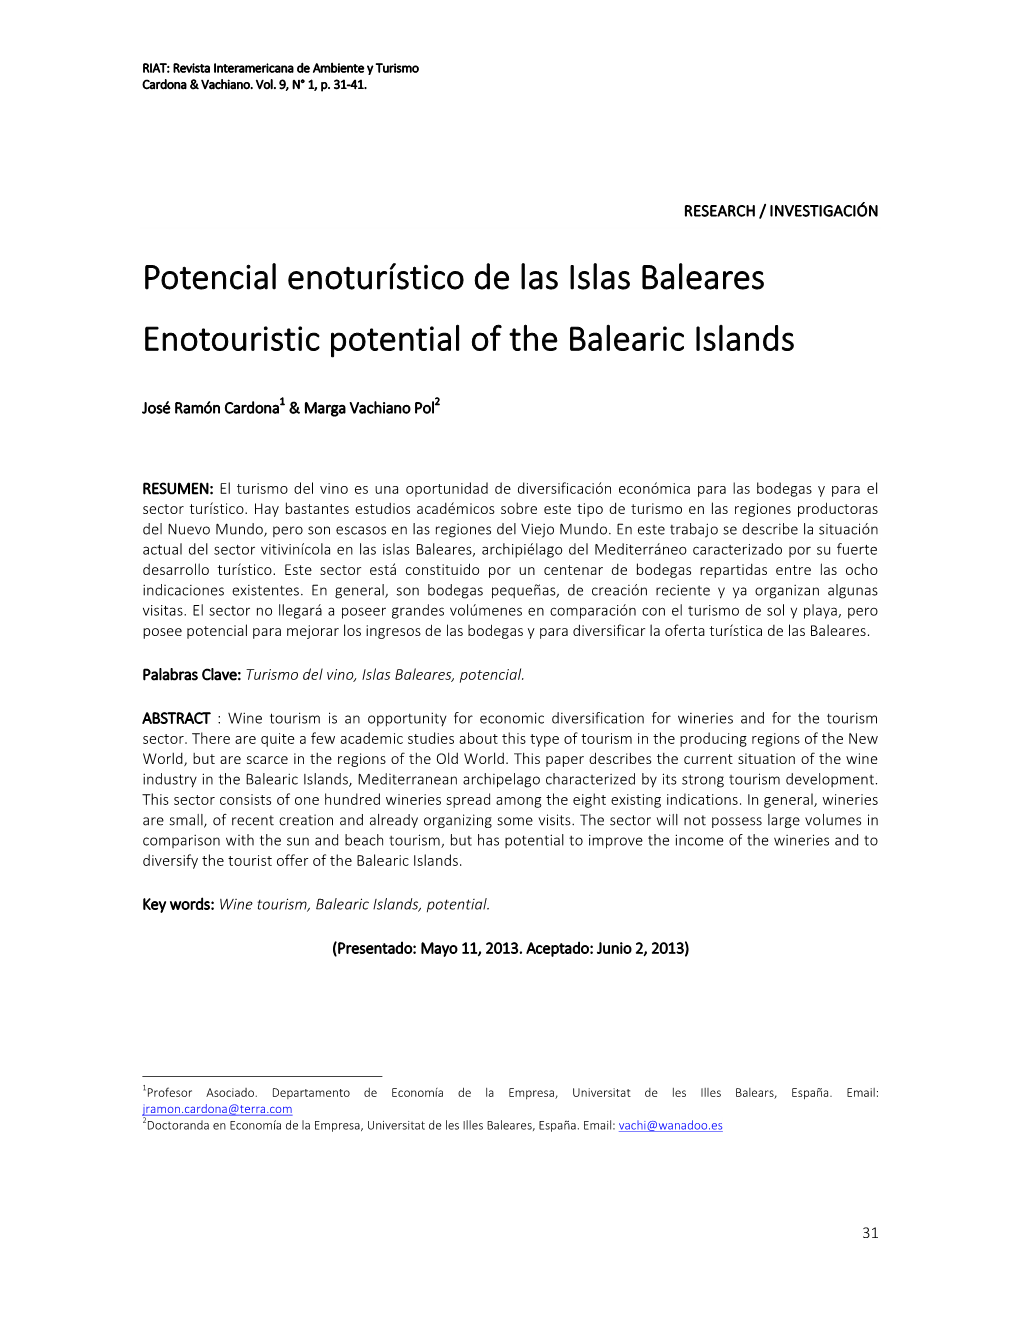 Potencial Enoturístico De Las Islas Baleares Enotouristic Potential of the Balearic Islands